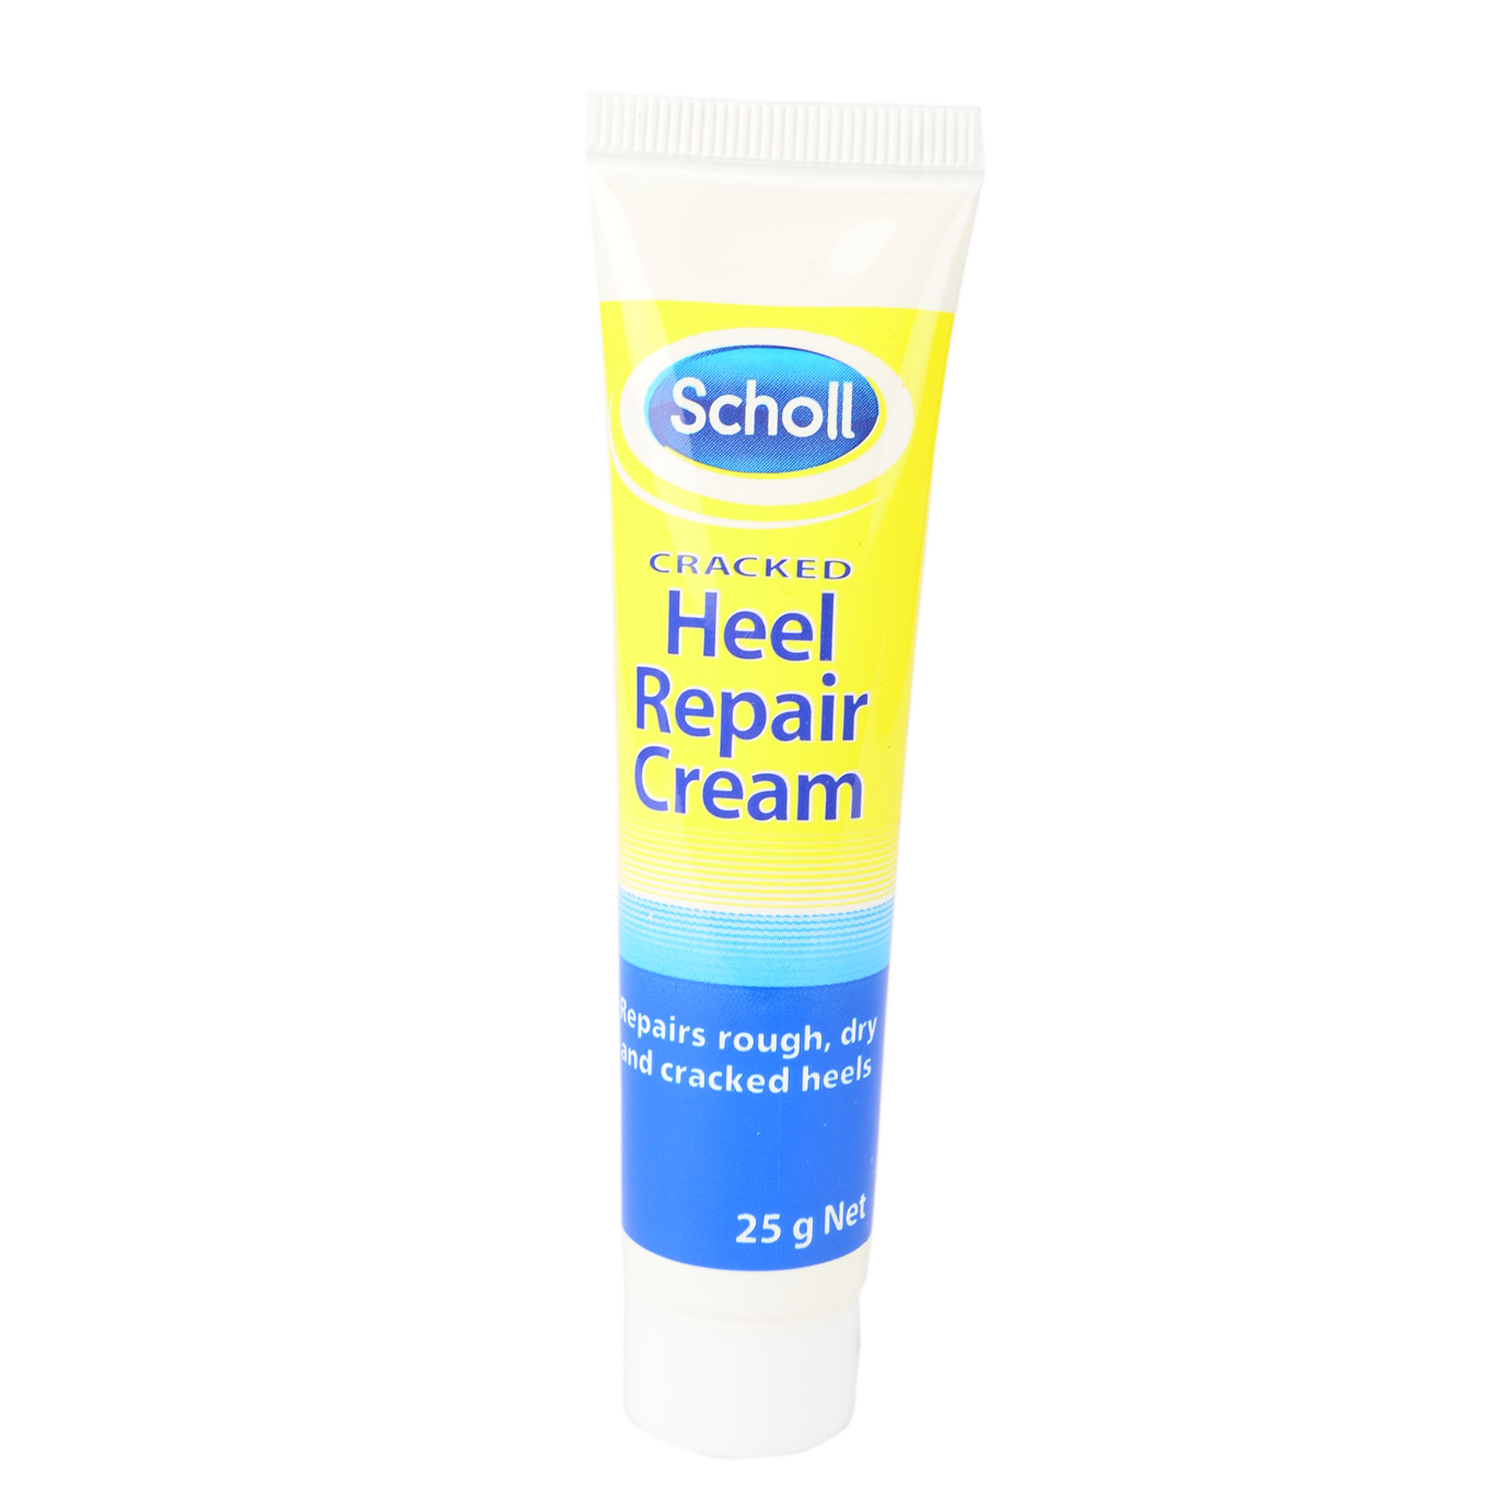 scholl cracked heel repair cream